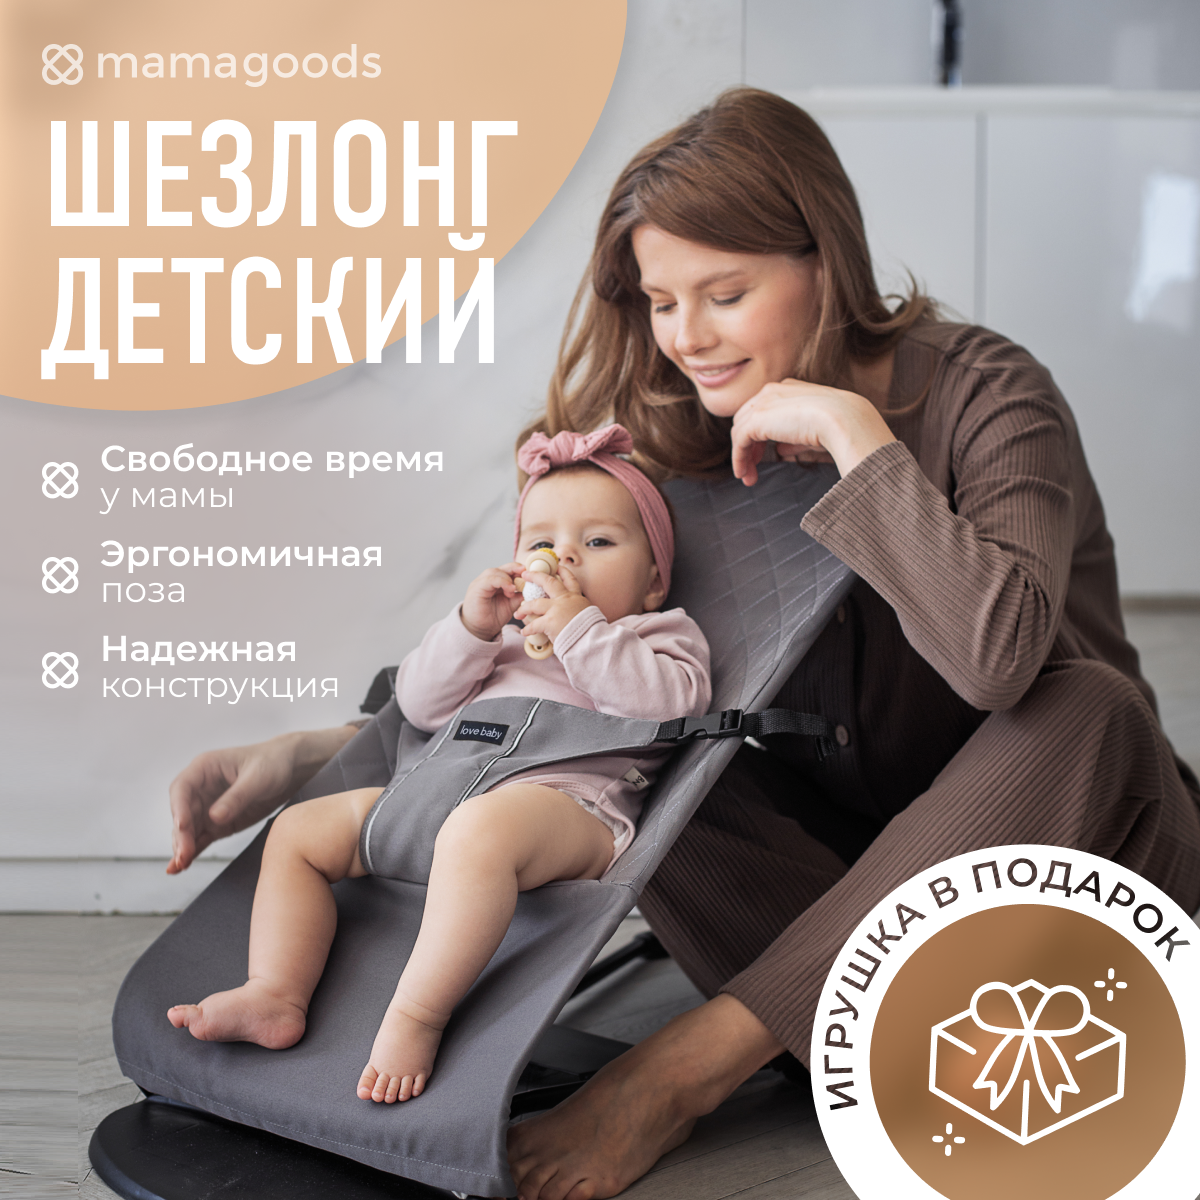 Детский складной шезлонг Mamagoods для новорожденных от 0 кресло качалка для малышей B2 - фото 2